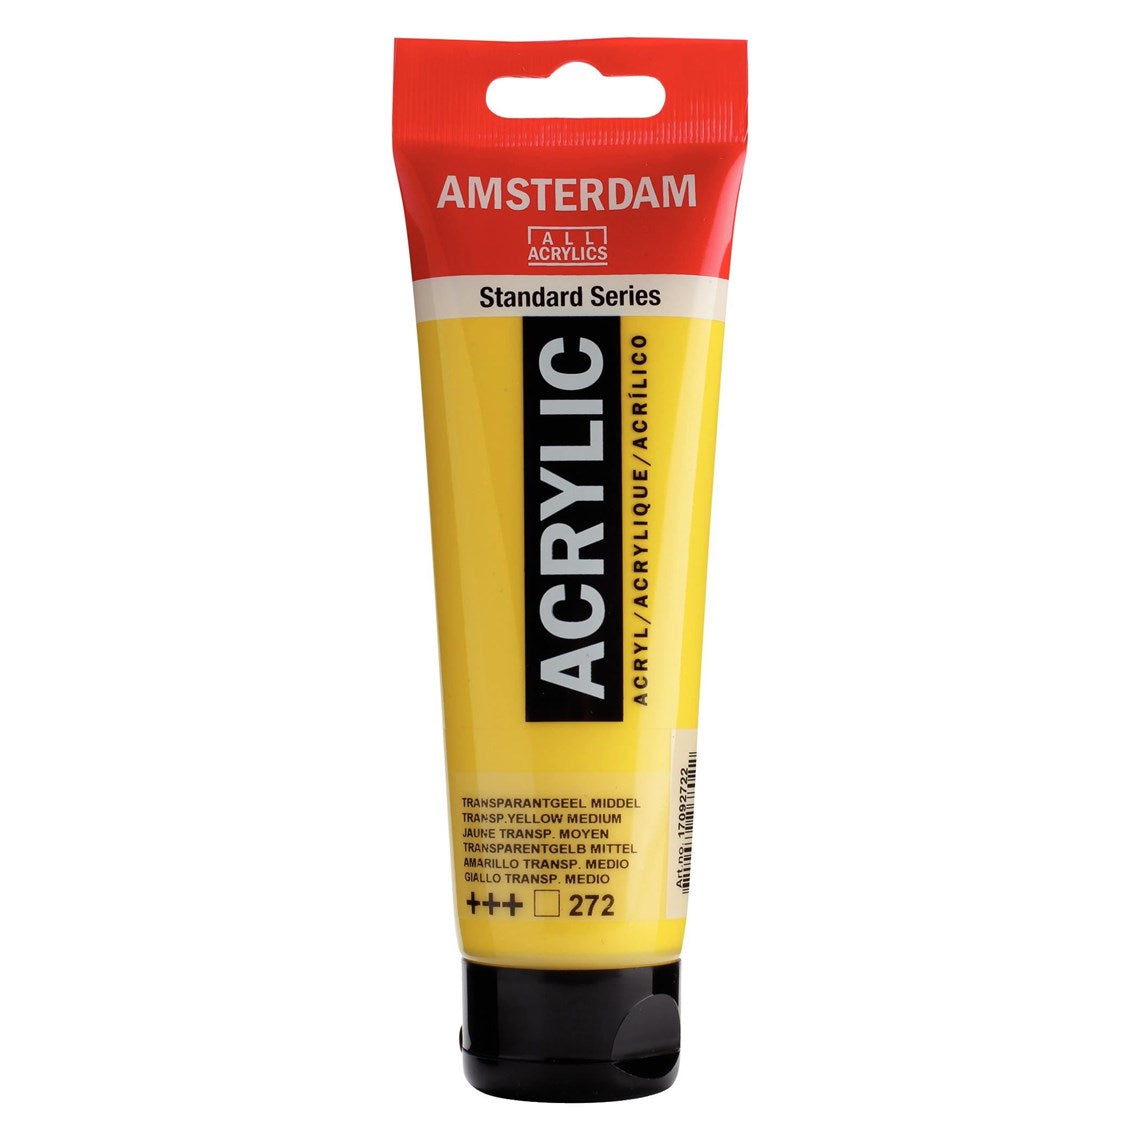 272 Keltainen läpikuultava Amsterdam Akryylimaali 120 ml  Royal Talens Akryylimaalit 120 ml tuubissa. Amsterdam akryylimaali on hintatietoisen harrastajan valinta. Maalin pohjana on kestävä 100 % akryylihartsi ja maali on saatavilla useissa värisävyissä. Amsterdam akryylimaali kuivuu nopeasti ja on myrkytöntä. Vesiliukoinen ennen kuivumista. Kuivuttuaan vedenkestävä.